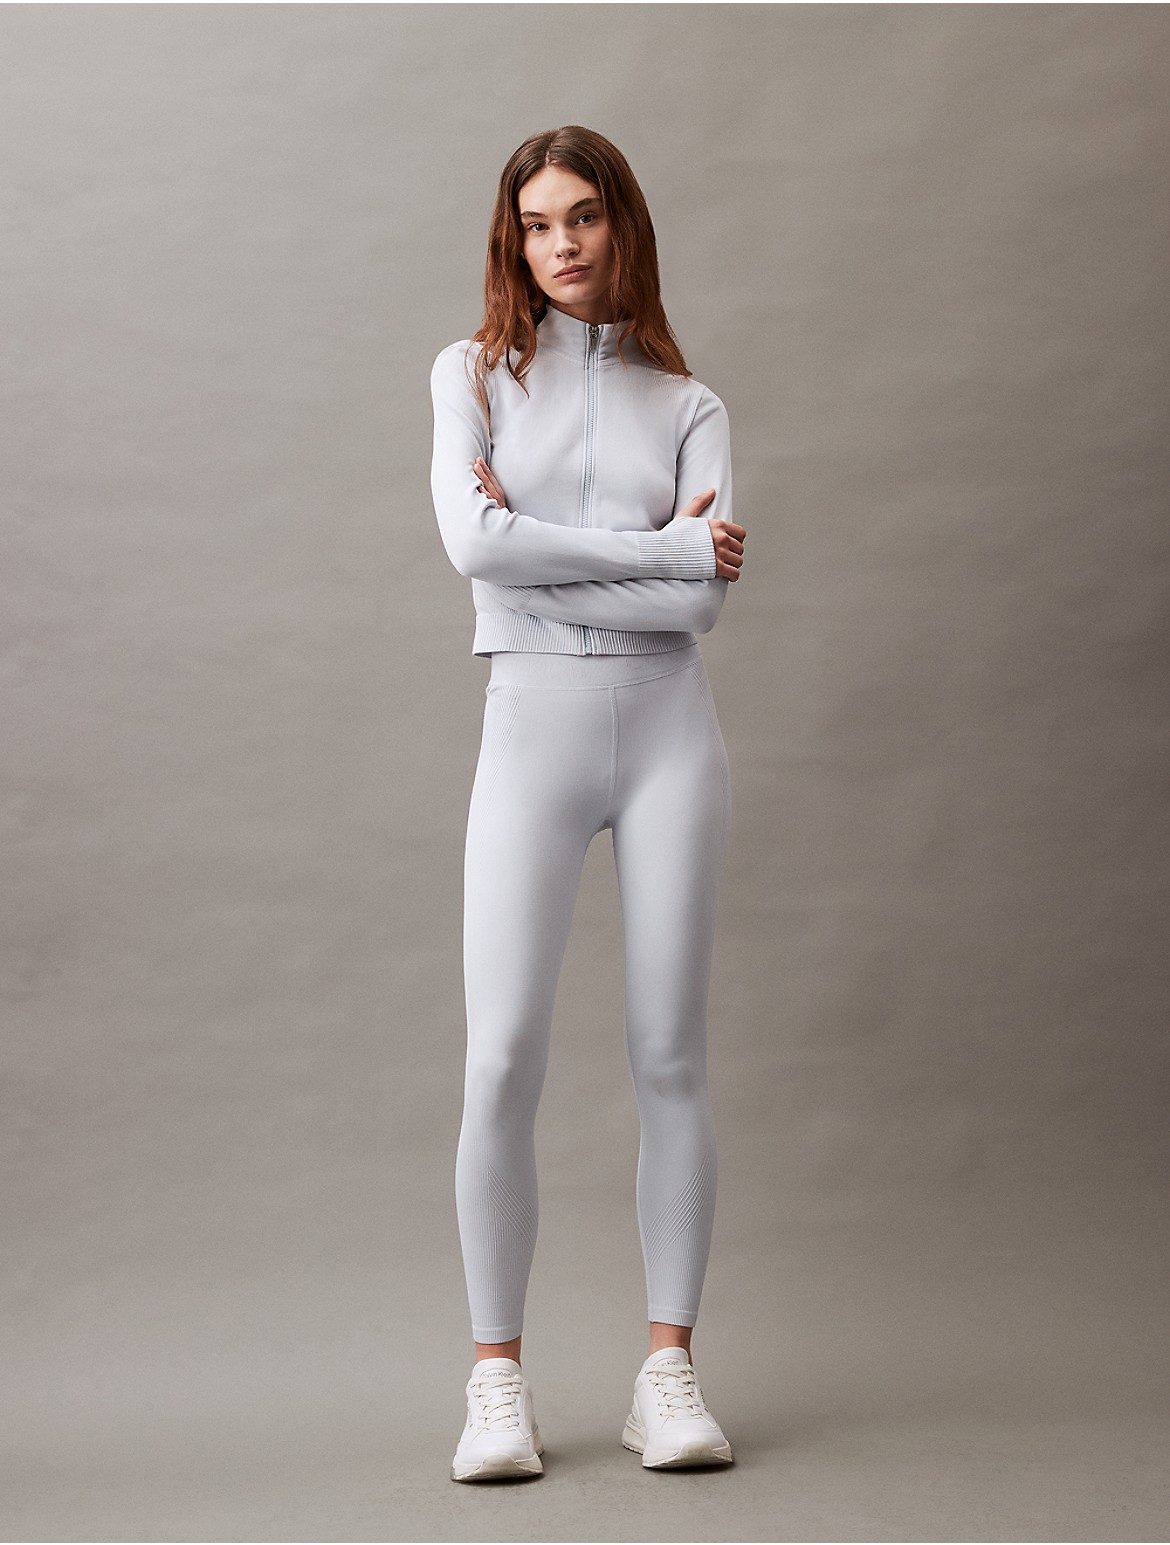 Calvin Klein Women's Performance Seamless Mock Neck Jacket - White - XL